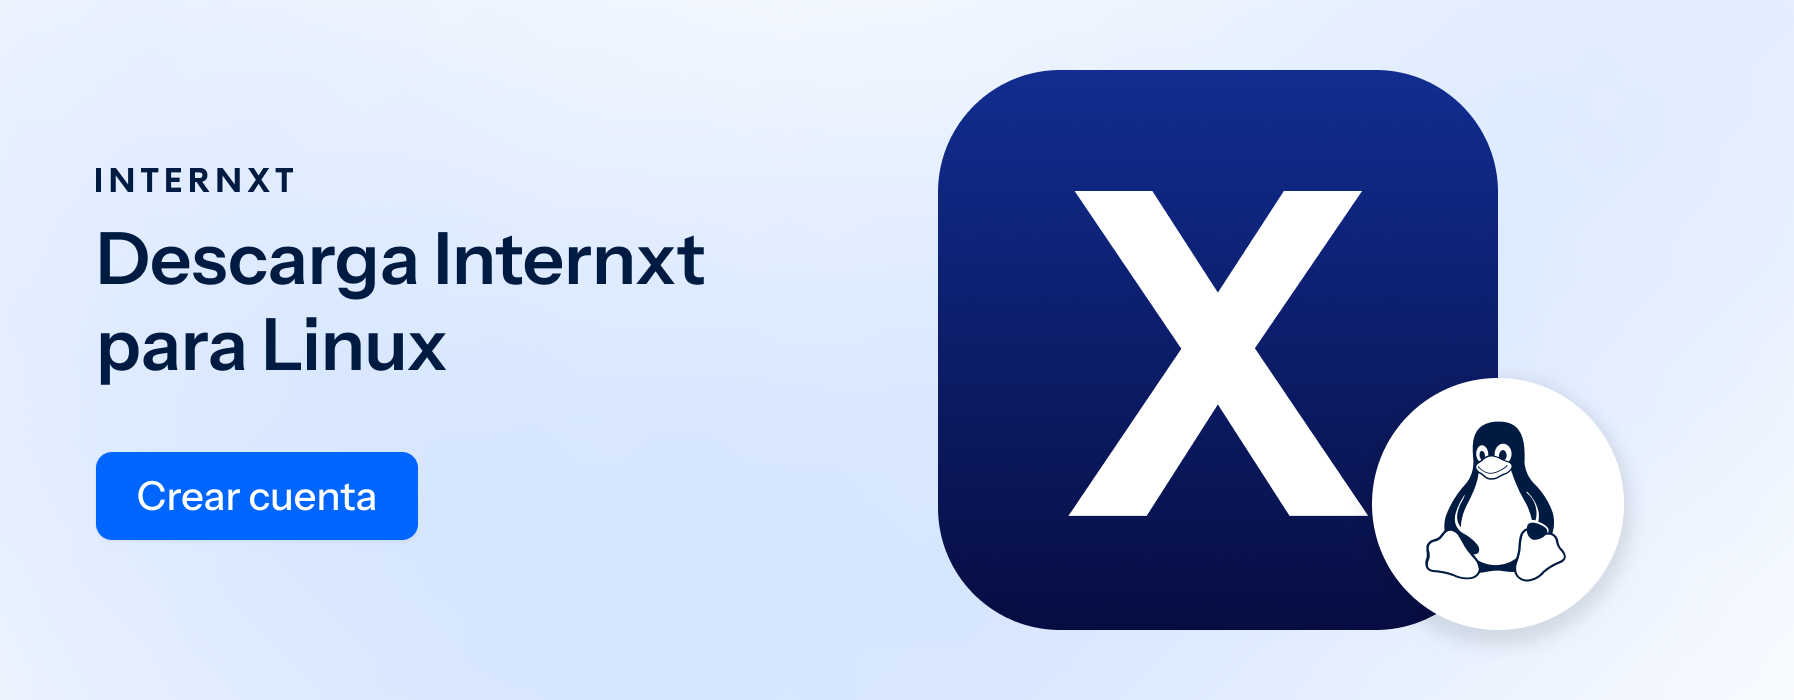 Internxt es un servicio de almacenamiento en la nube basado en encriptación y privacidad.